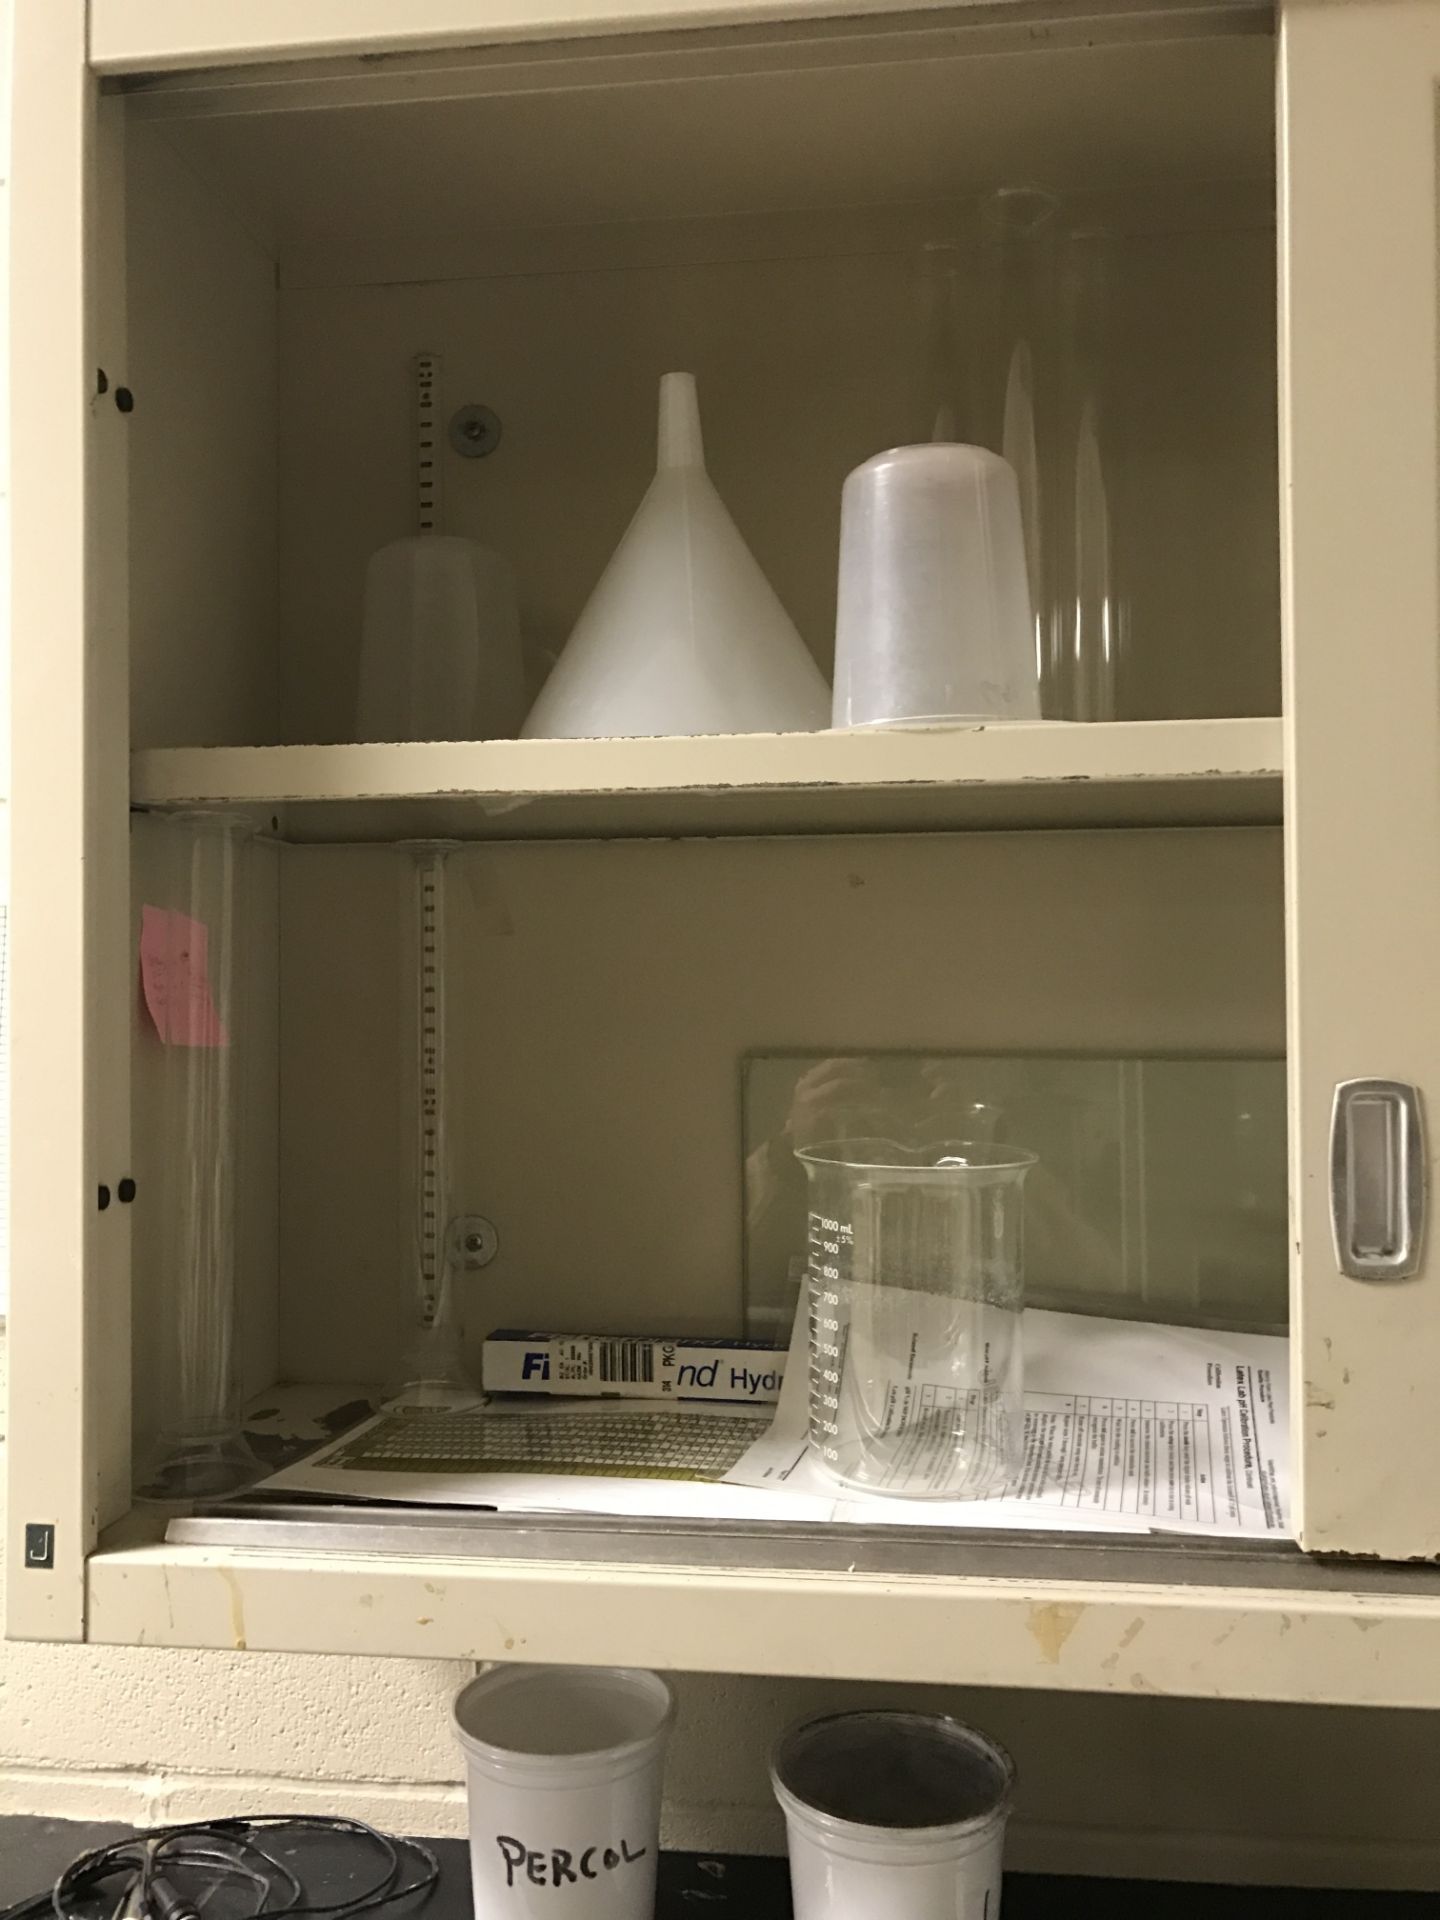 Laboratory Glassware, all glassware in lab - Image 5 of 6